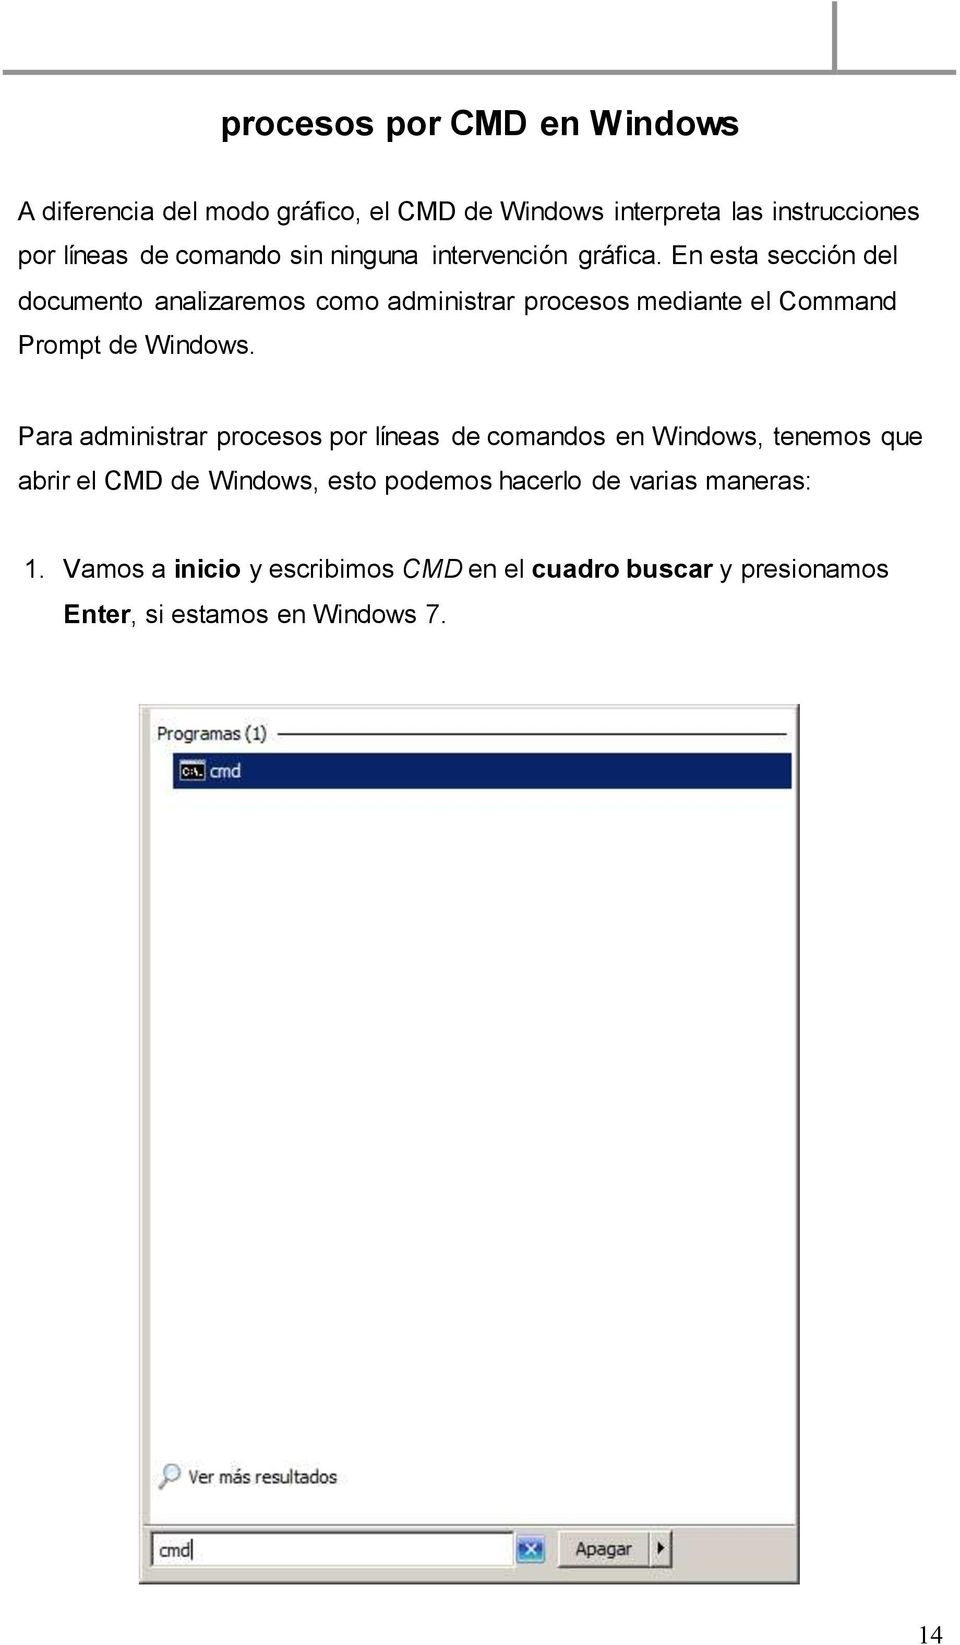 En esta sección del documento analizaremos como administrar procesos mediante el Command Prompt de Windows.